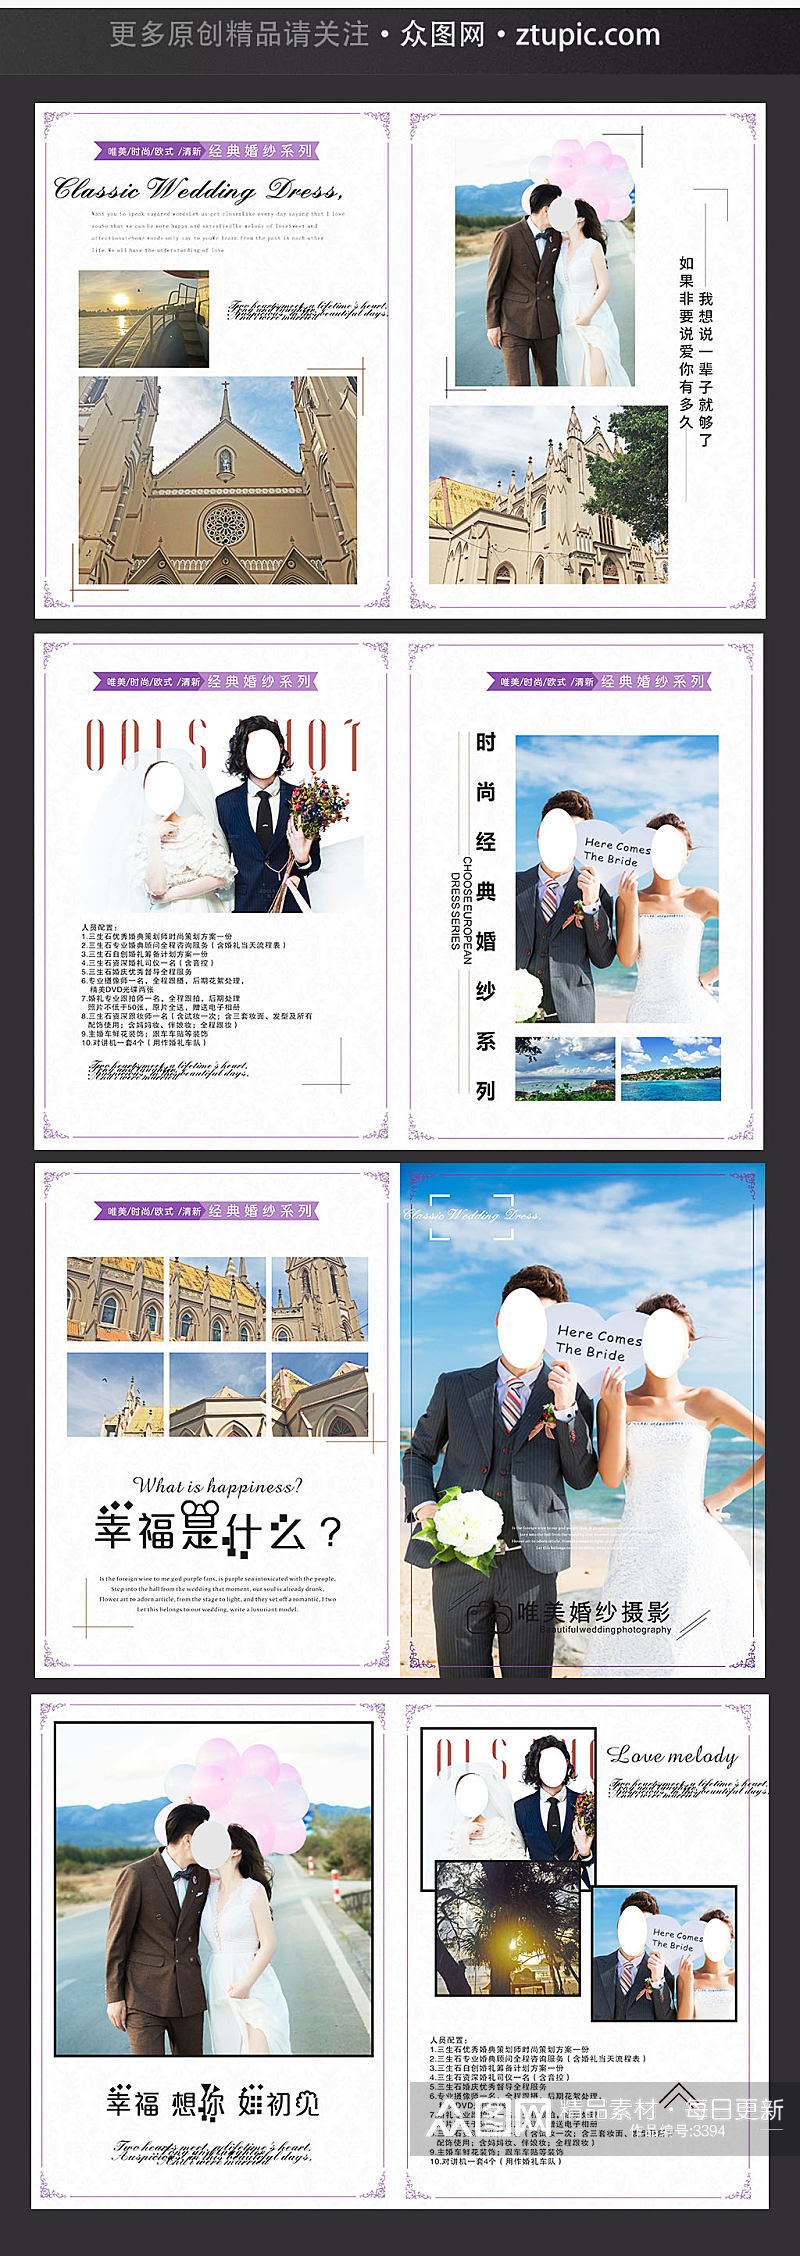 小清新整套婚纱婚礼婚庆摄影画册设计模板素材